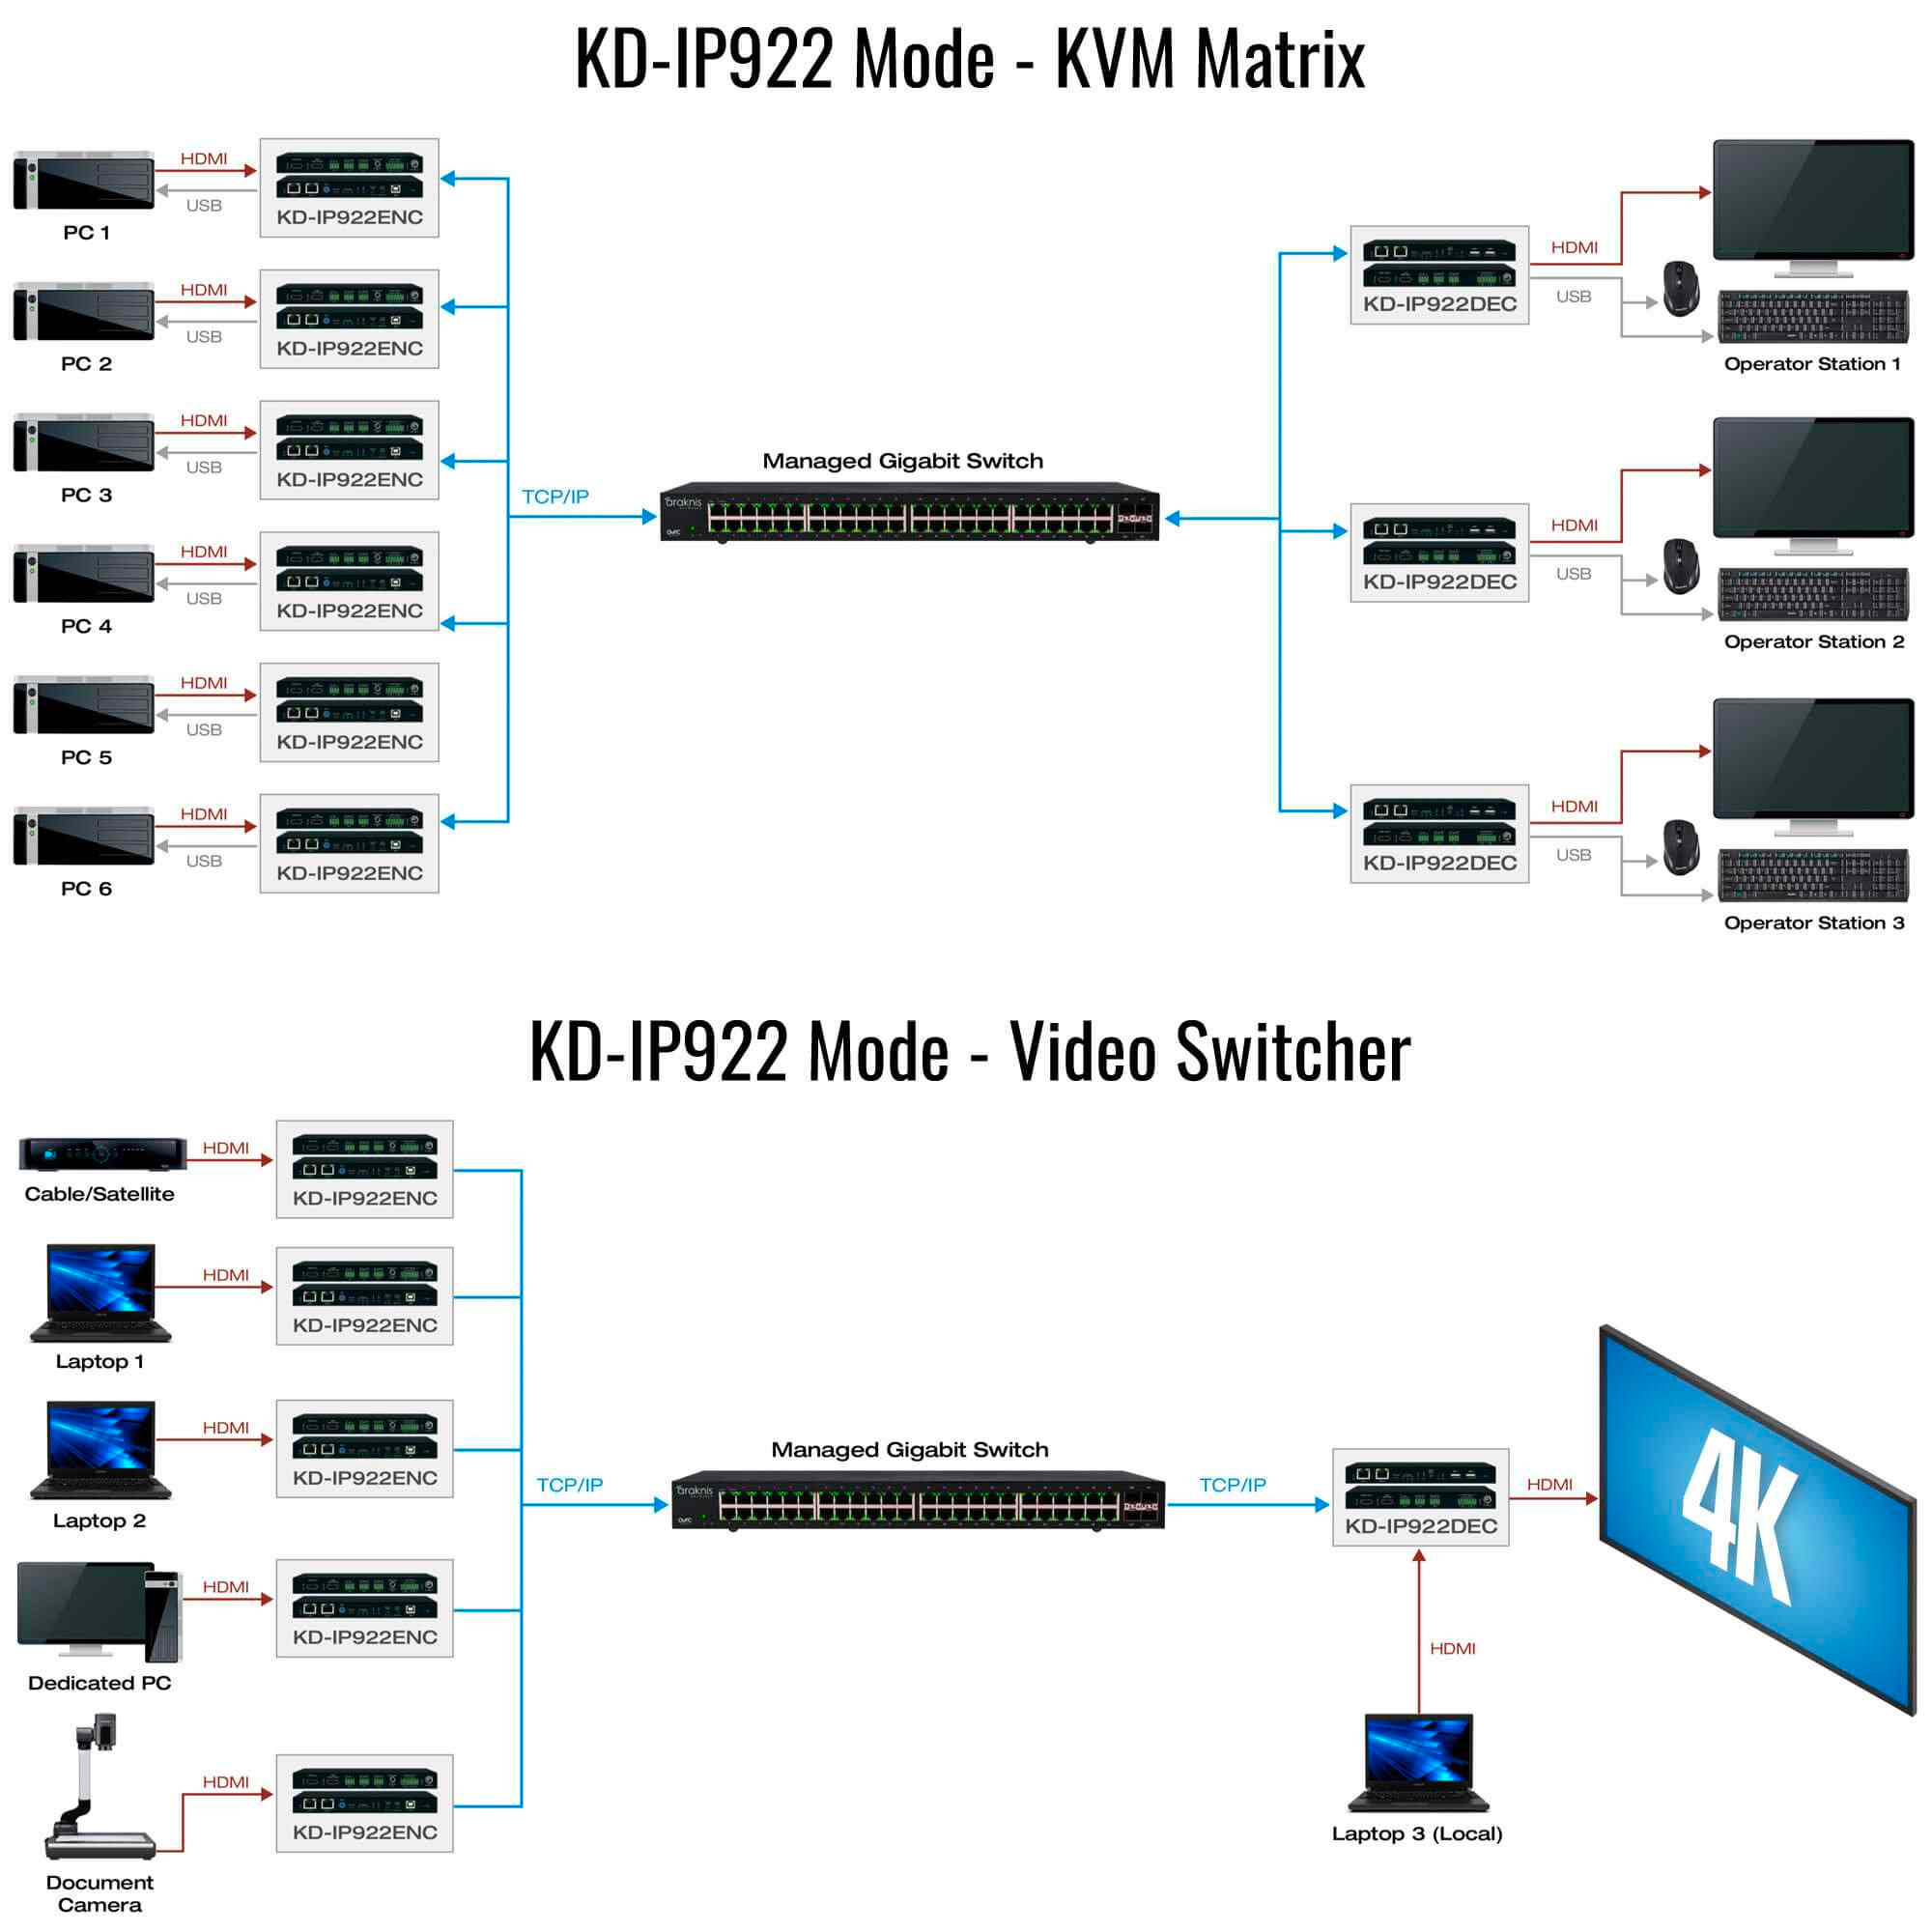 KD-IP922DEC-II